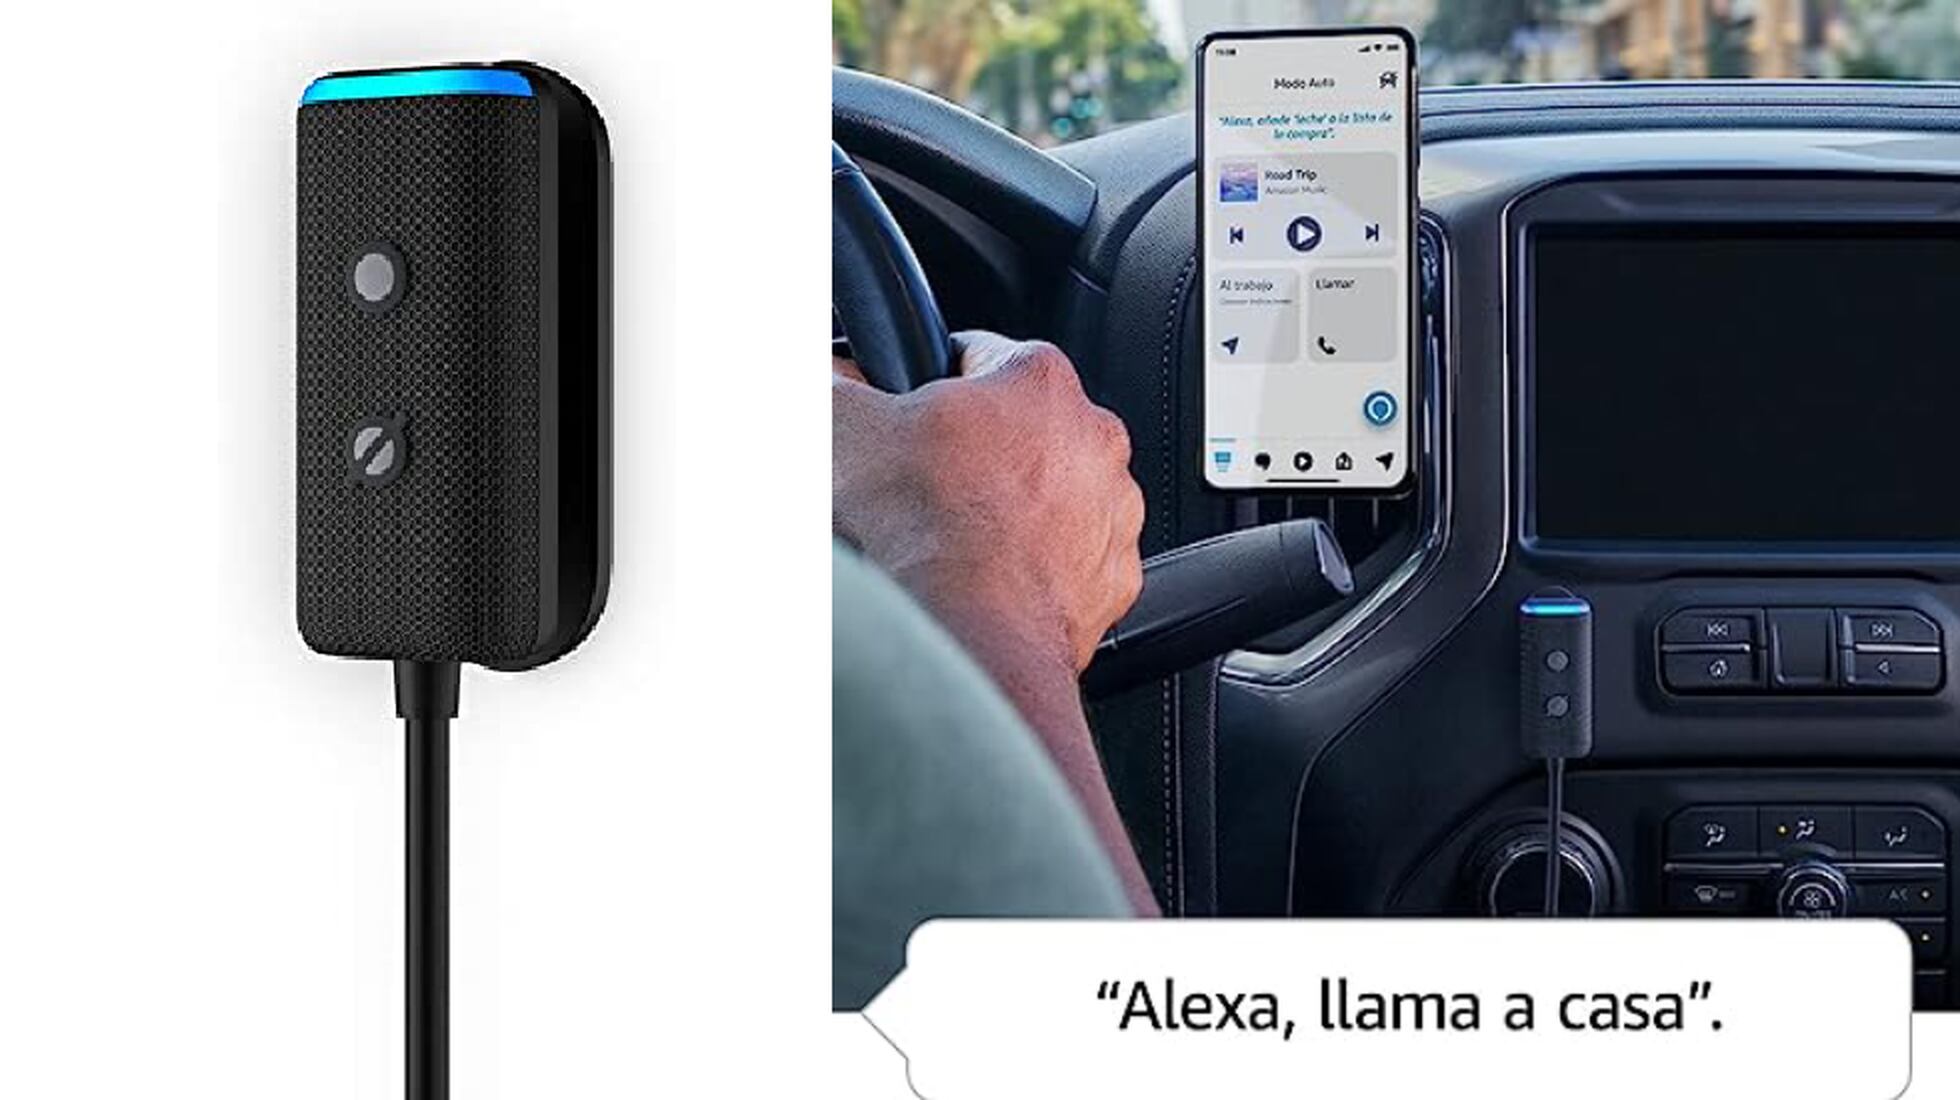 Alexa en tu coche archivos - Tecnoyfoto